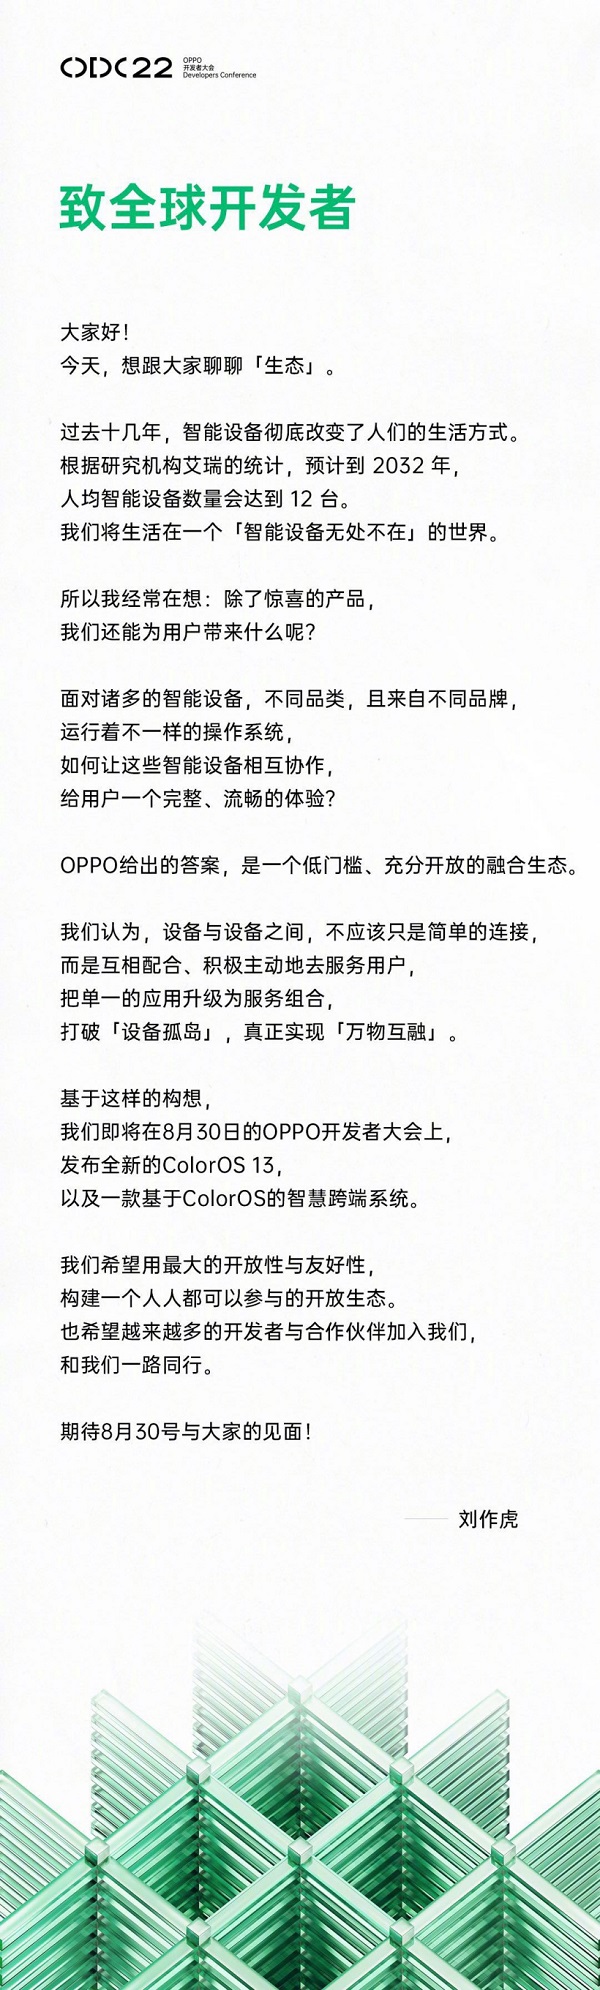 刘作虎官宣8月30日举办OPPO开发者大会，主题为万物互融时代